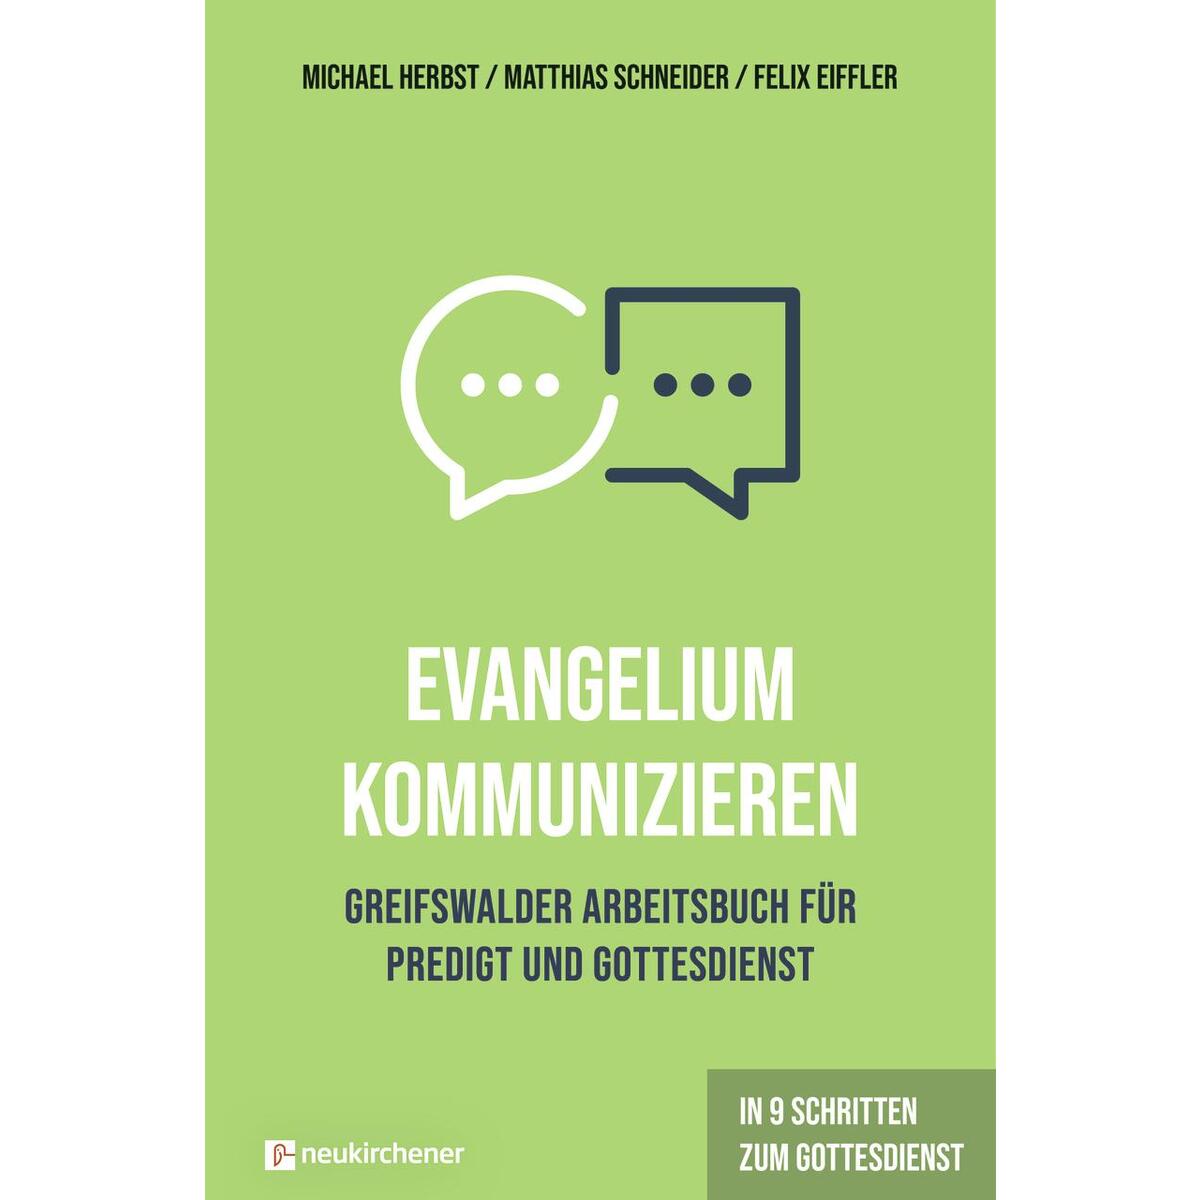 Evangelium kommunizieren - Greifswalder Arbeitsbuch für Predigt und Gottesdienst von Neukirchener Verlag